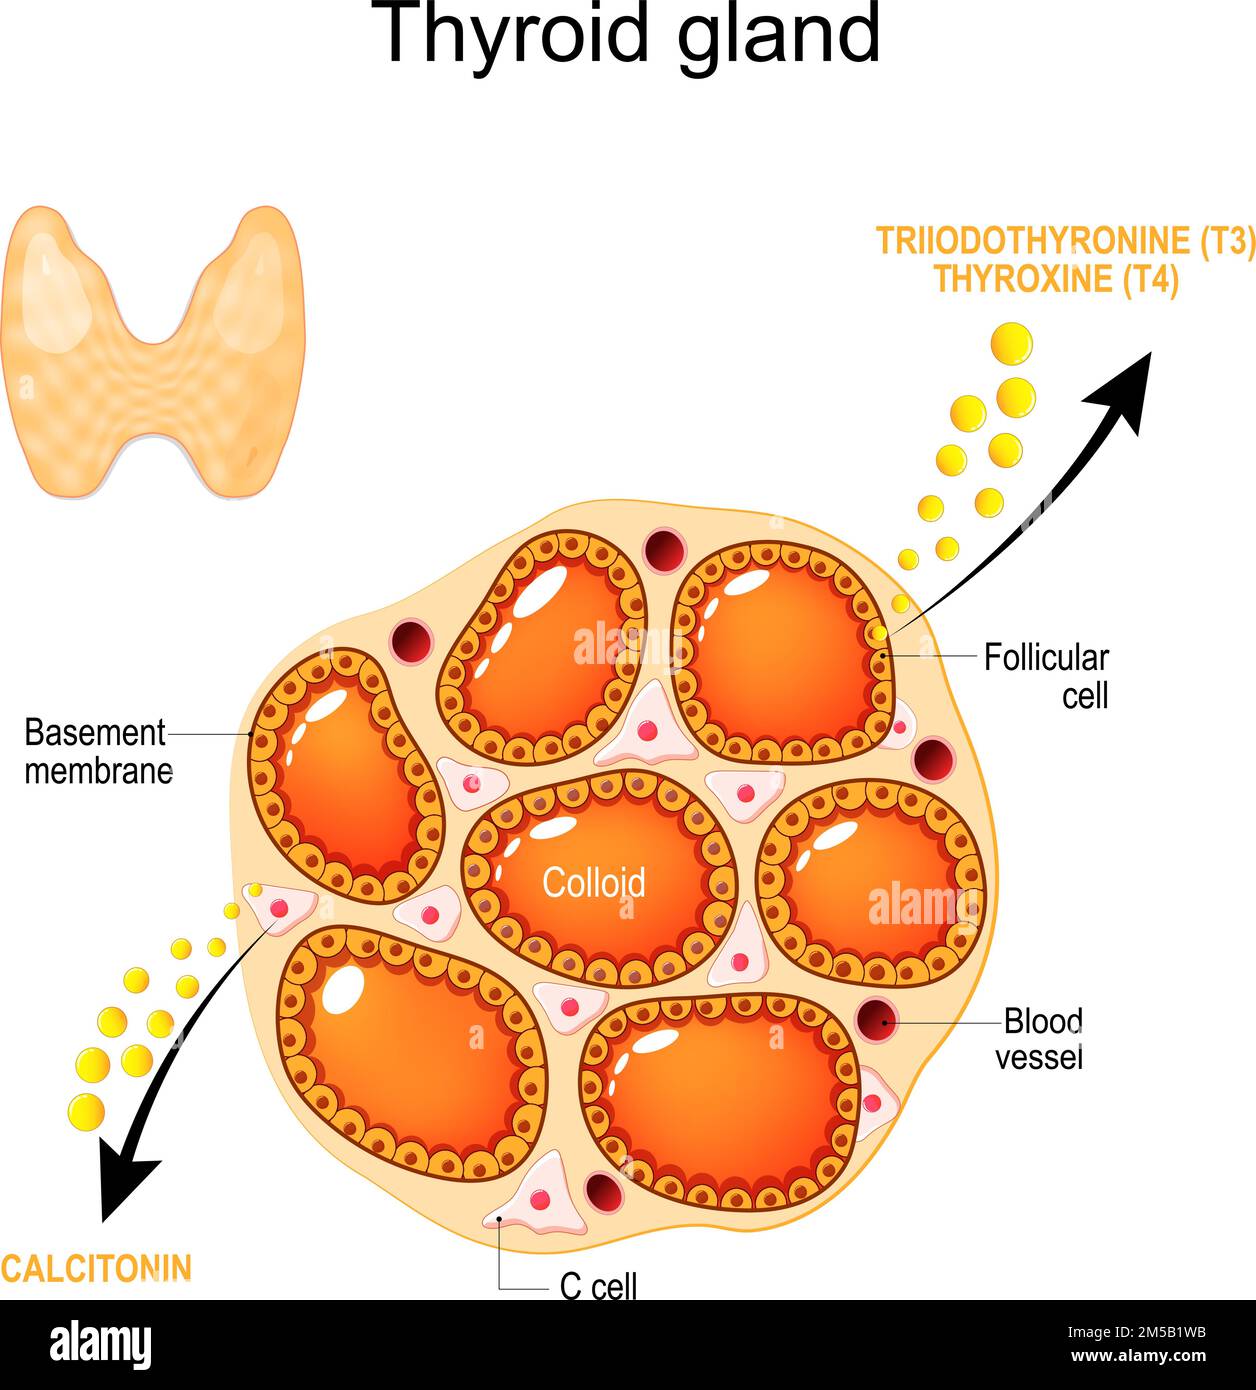 anatomie et physiologie de la glande thyroïde. Structure d'une glande thyroïde humaine. Cellules folliculaires, membrane basale, vaisseau sanguin, cellules C et colloïde Illustration de Vecteur